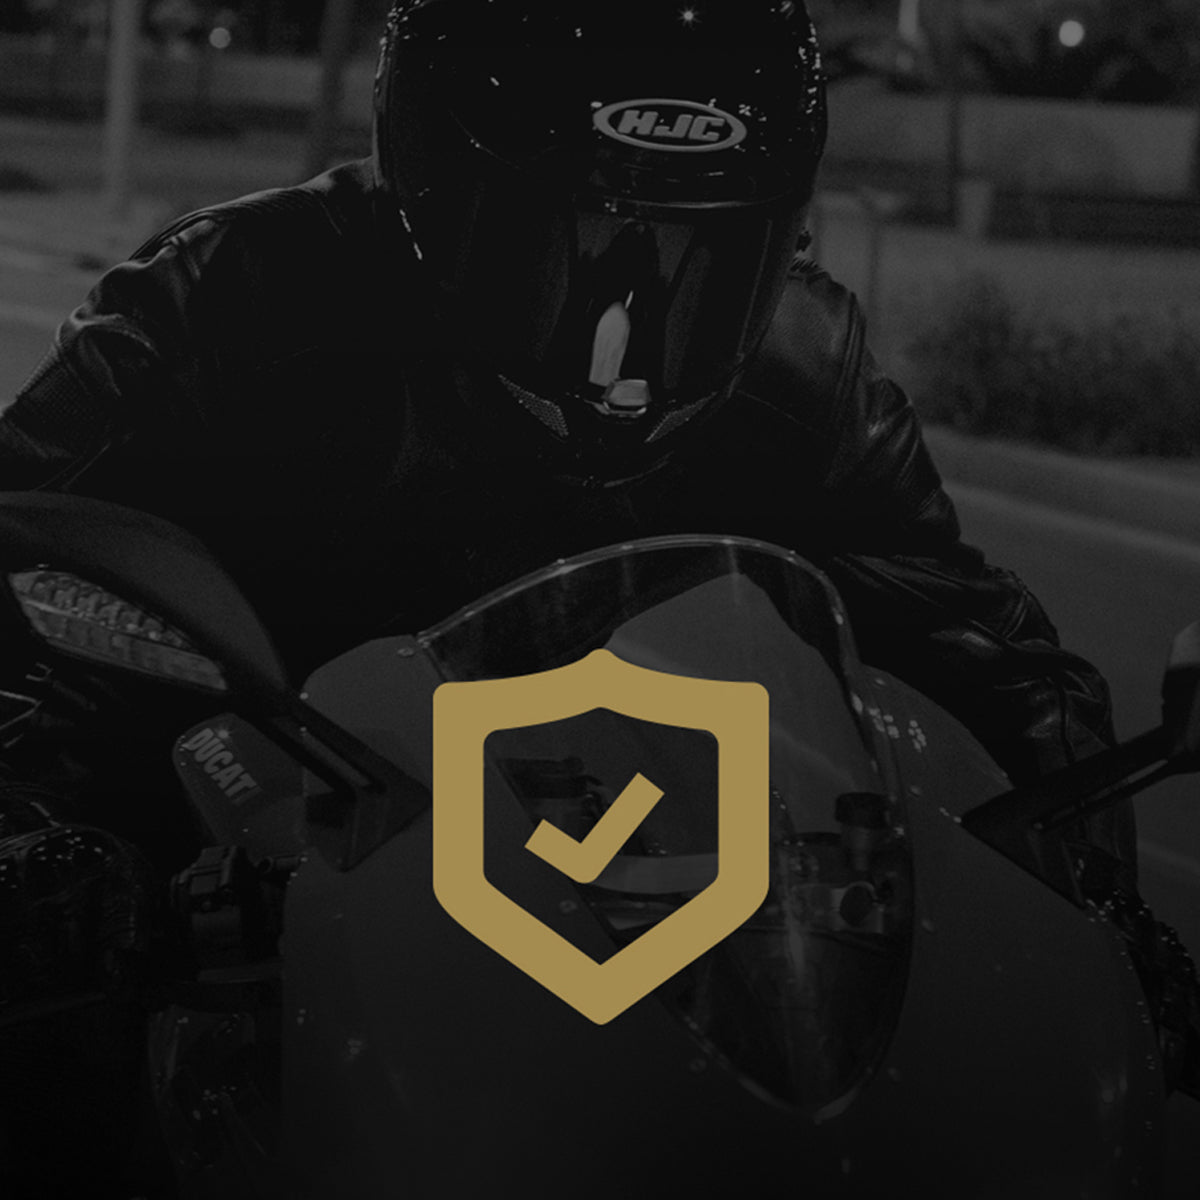 HJC Motorcycle Helmets | Introducing The RPHA 1N Red Bull Austin GP